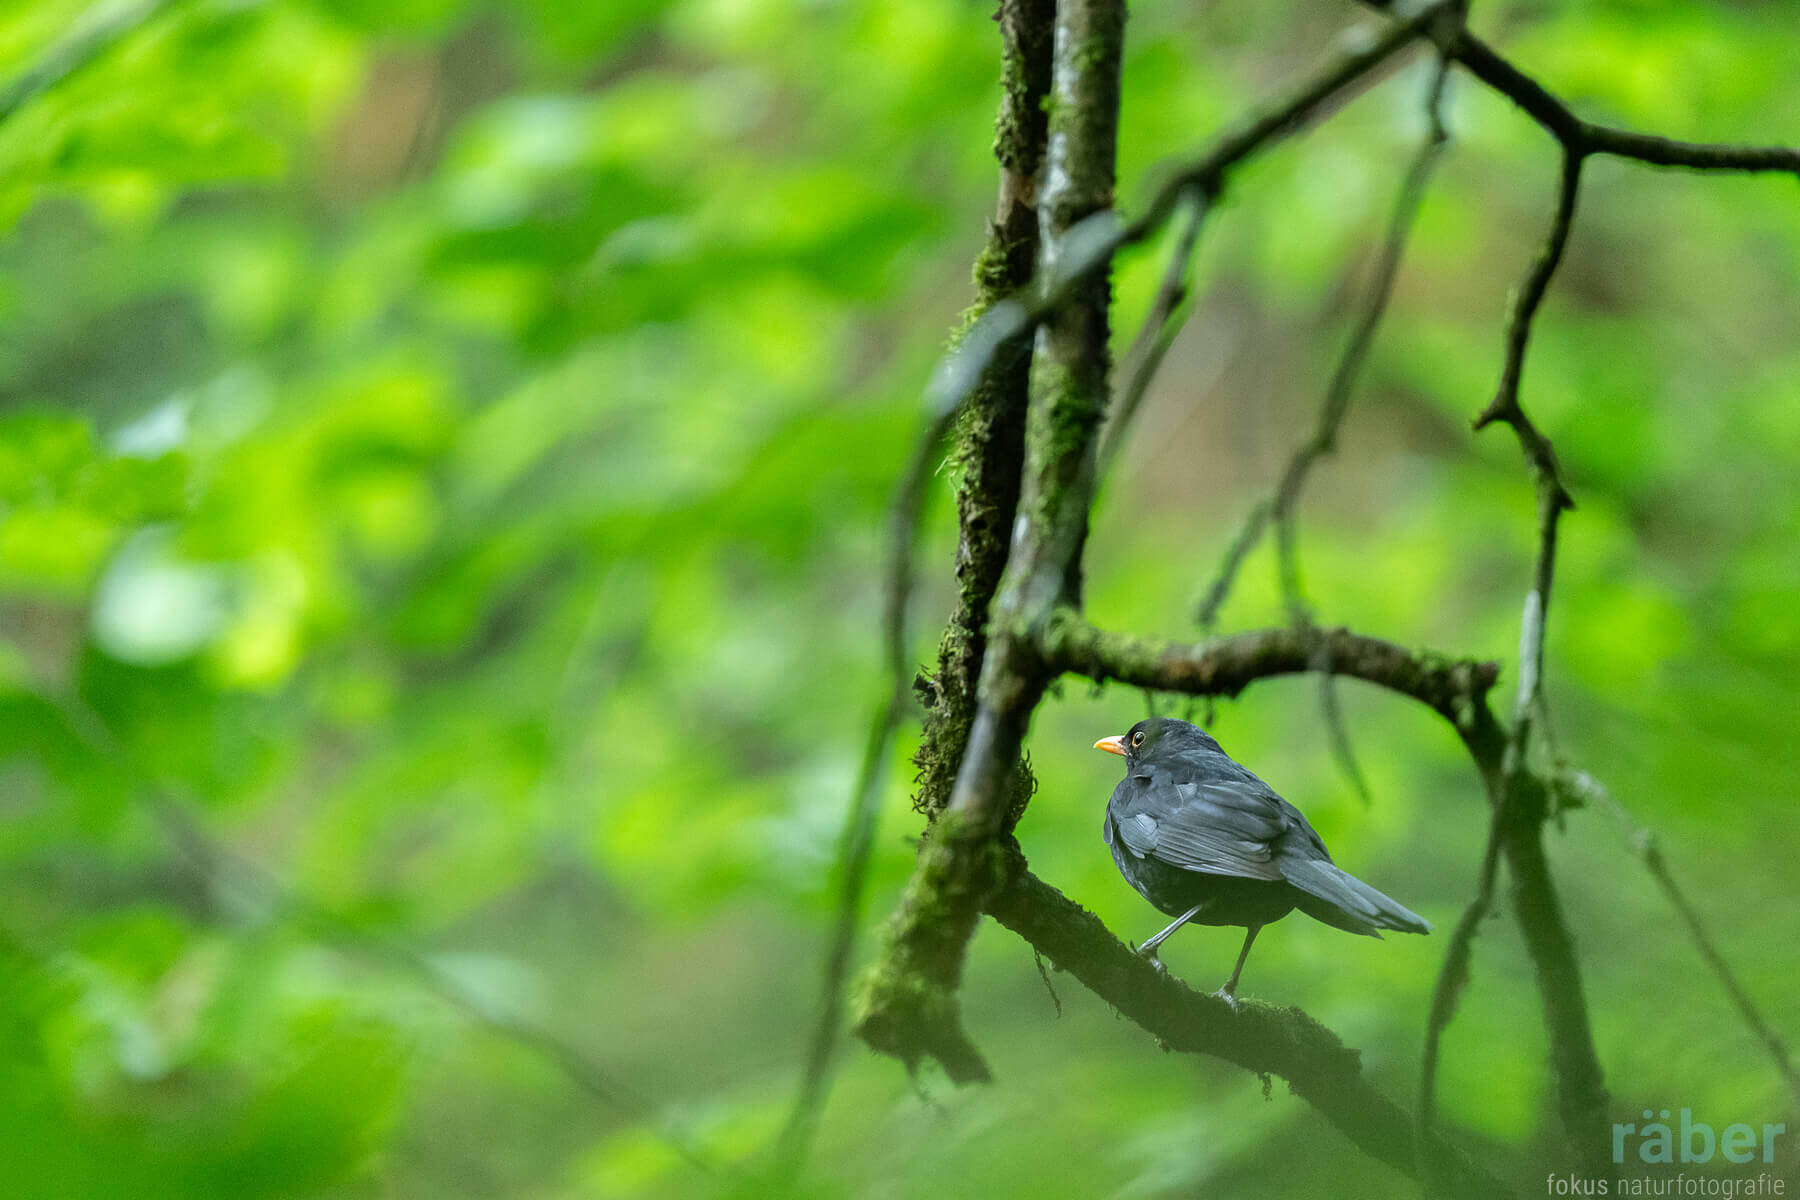 Vögel im Garten: Wenn die Natur singt und auflebt.